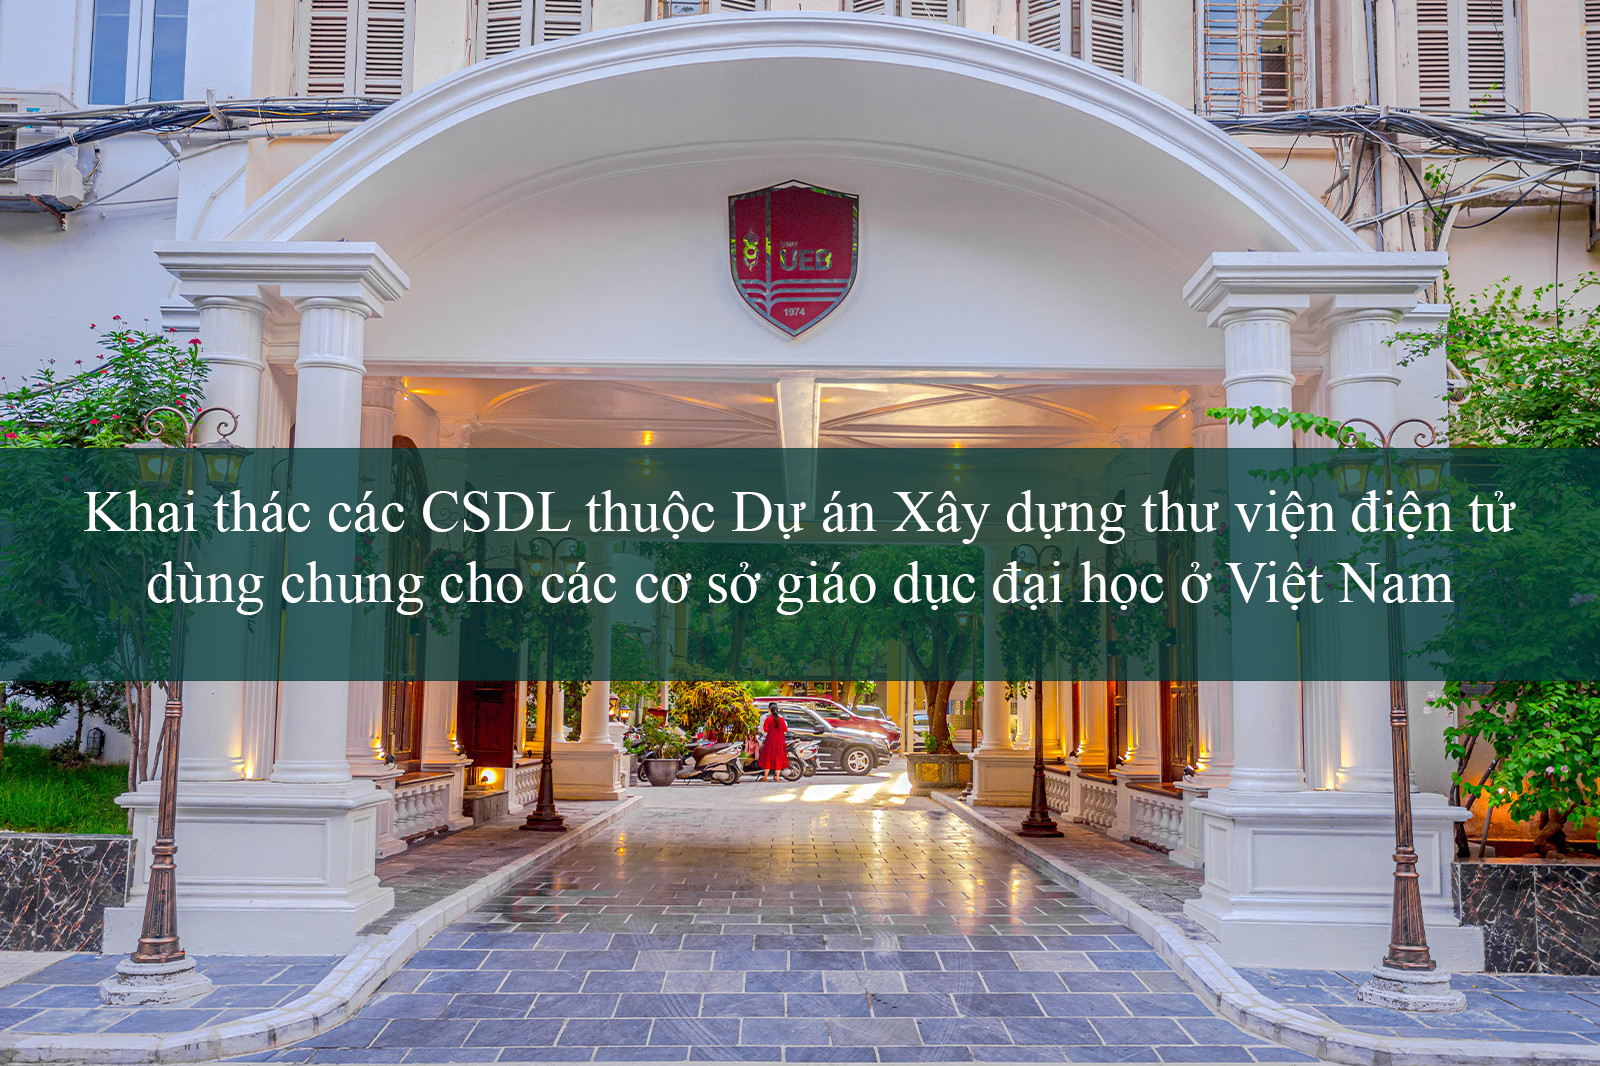 Khai thác các CSDL thuộc Dự án Xây dựng thư viện điện tử dùng chung cho các cơ sở giáo dục đại học ở Việt Nam